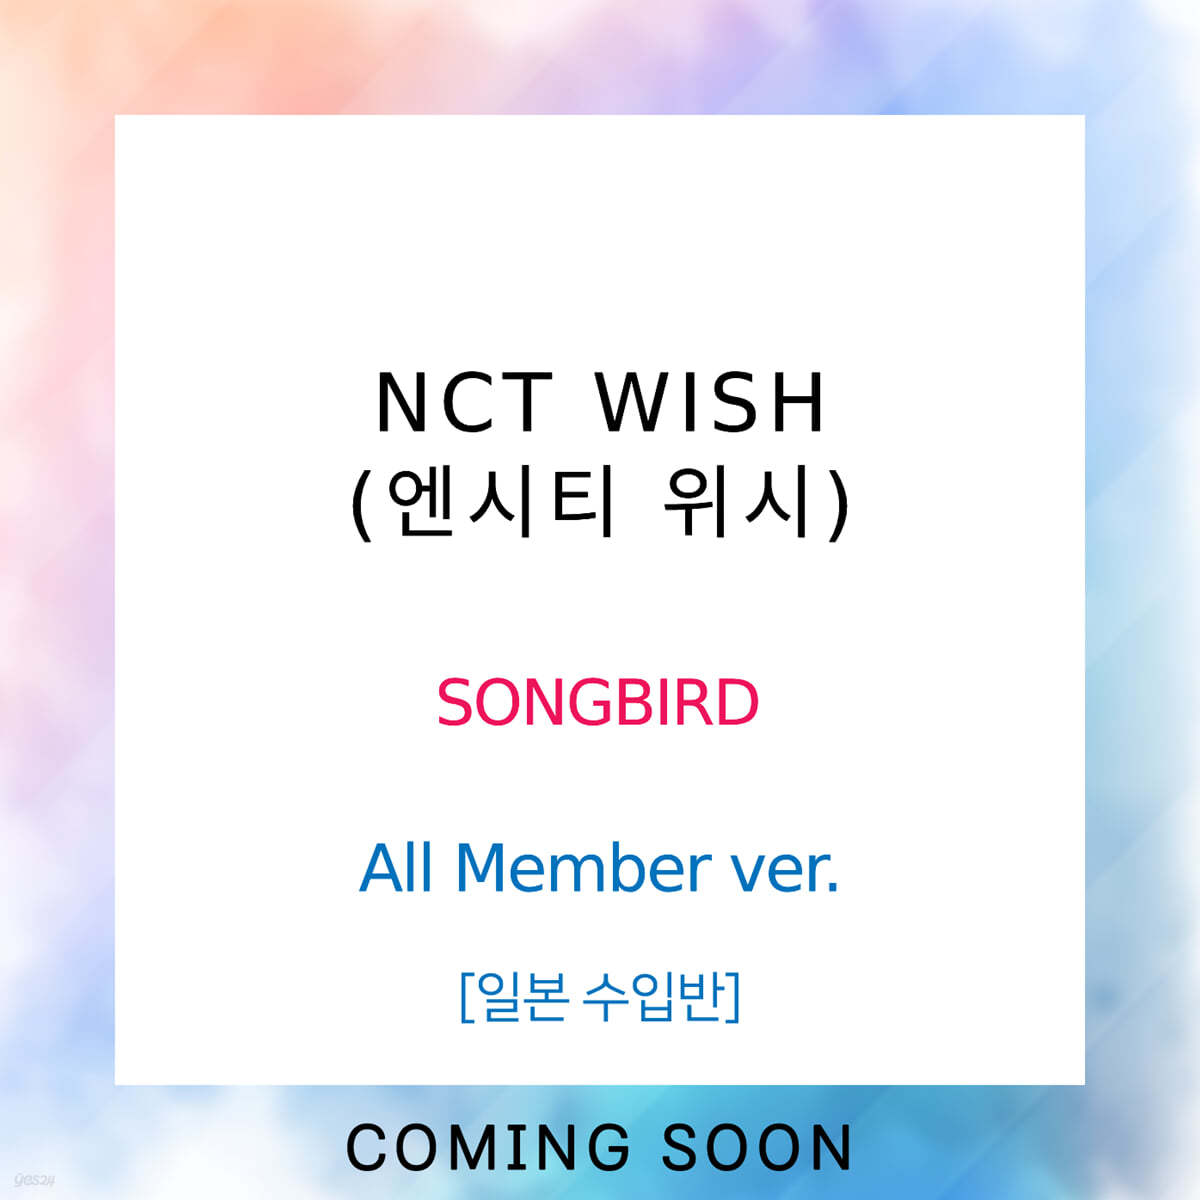 엔시티 위시 (NCT WISH) - SONGBIRD [All Member ver.]